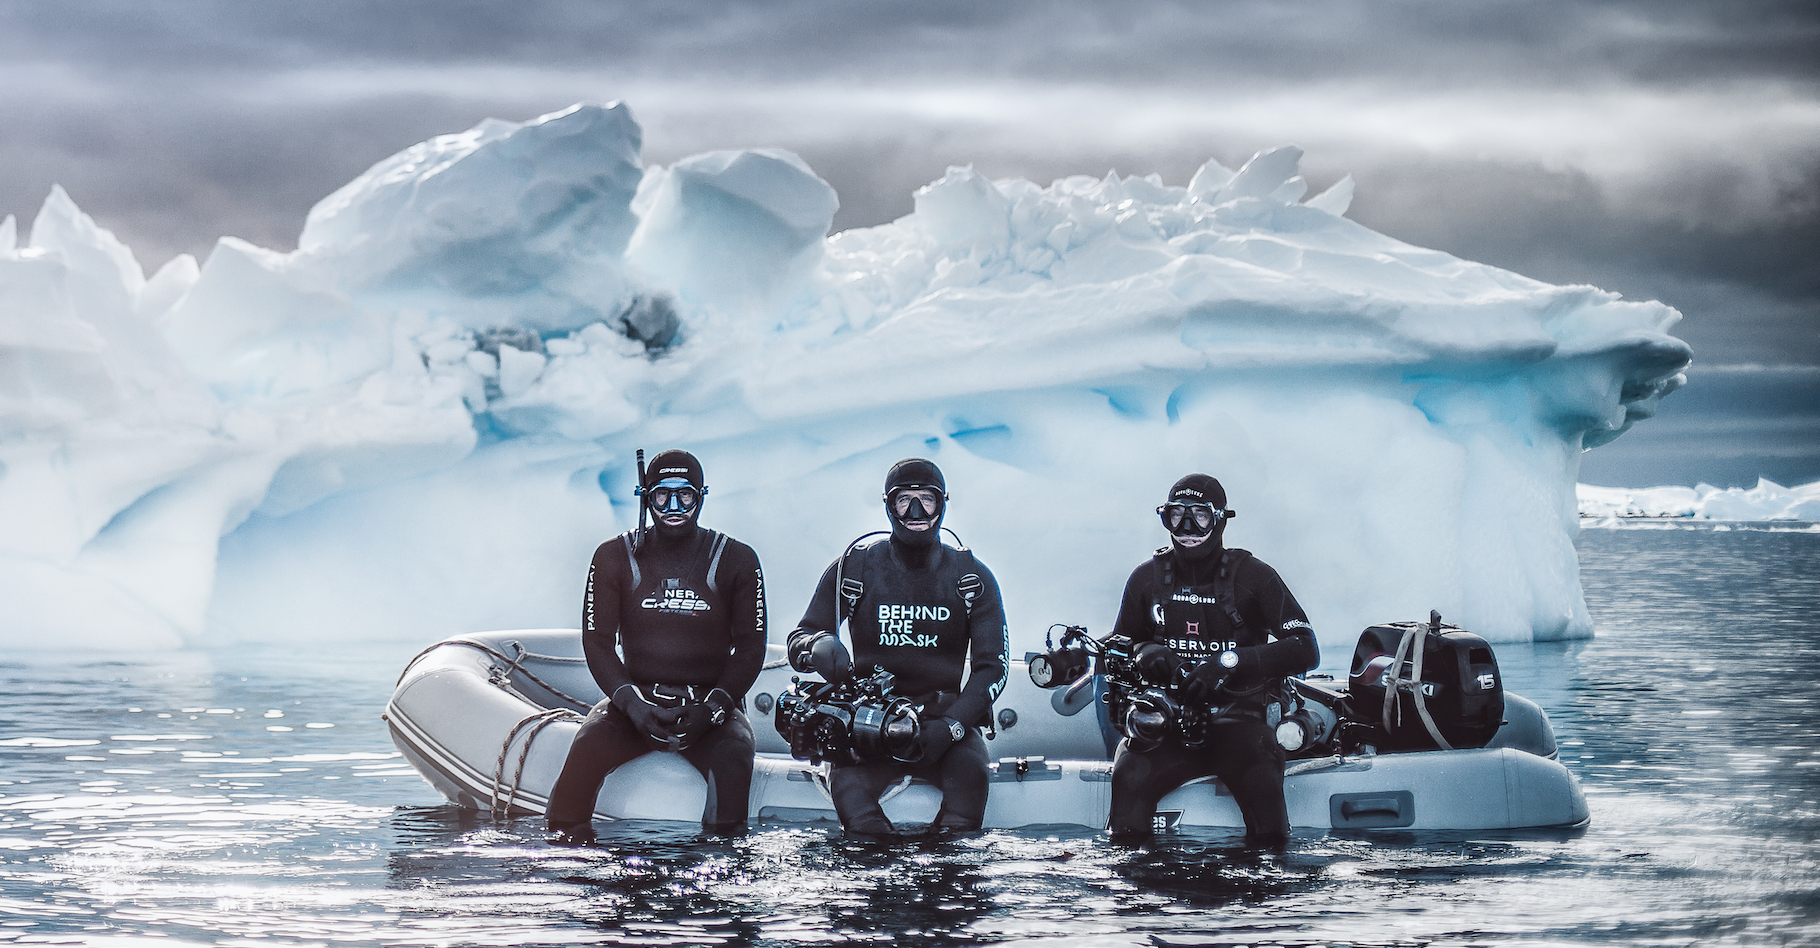 En compagnie de l’apnéiste Guillaume Nery et du caméraman Florian Fisher, le photographe Greg Lecoeur a plongé dans les eaux glacées de l’Antarctique. Il nous ramène de cet écosystème hostile et fragile, des images rares et merveilleuses. © Greg Lecoeur, Tous droits réservés